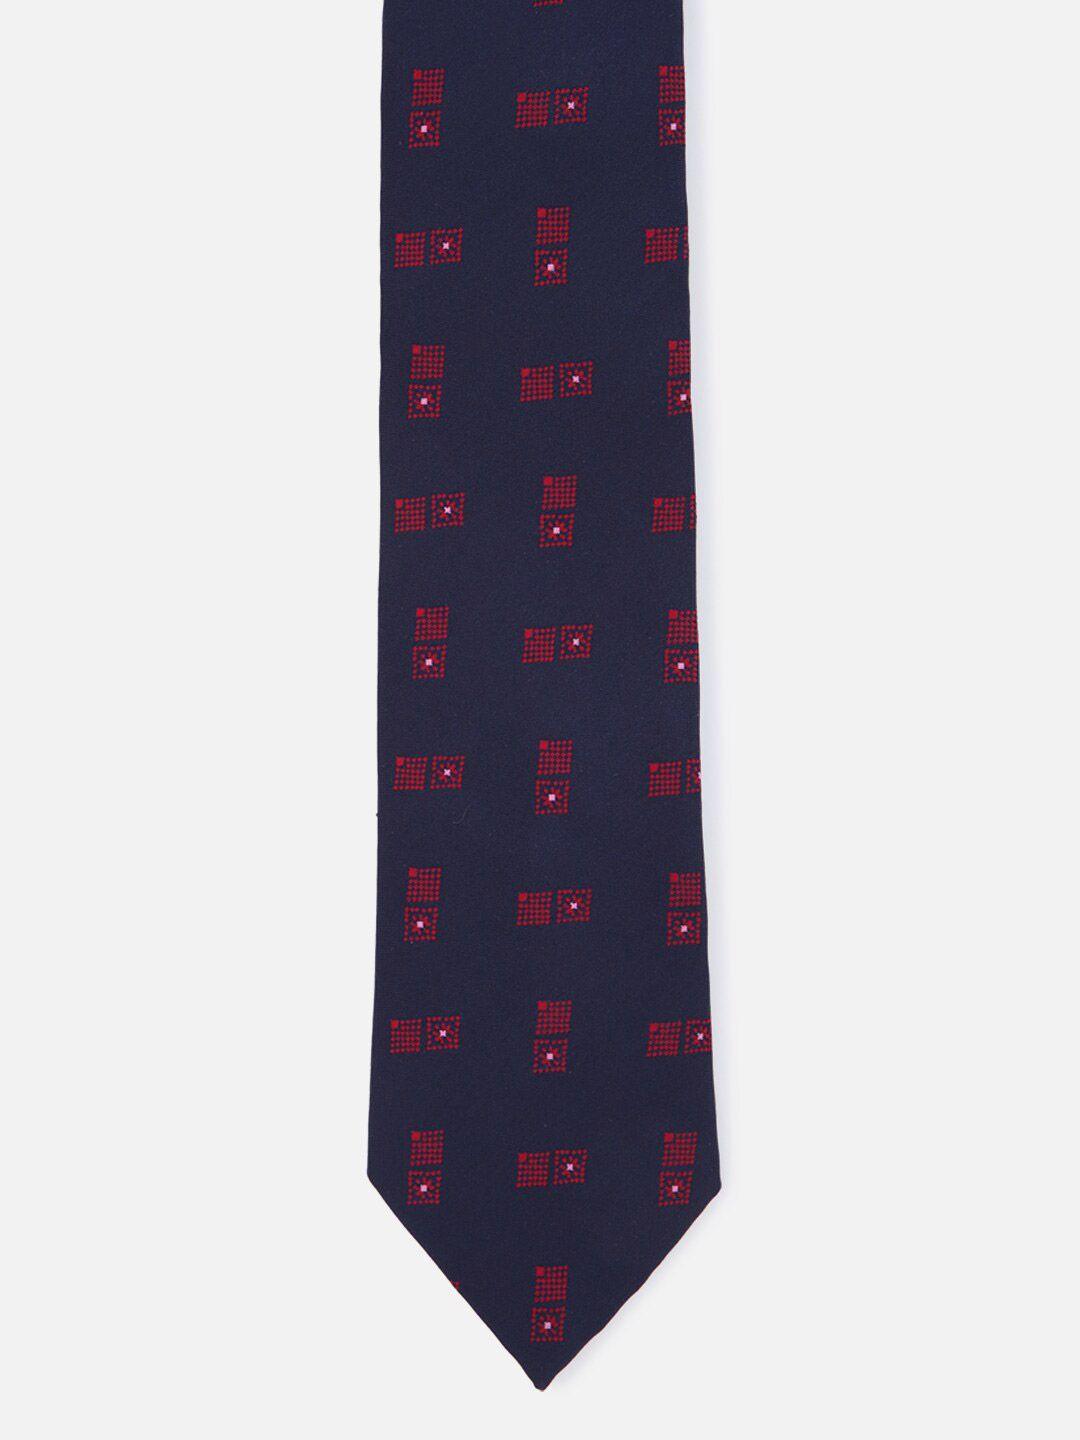 louis philippe men navy blue & red printed broad tie